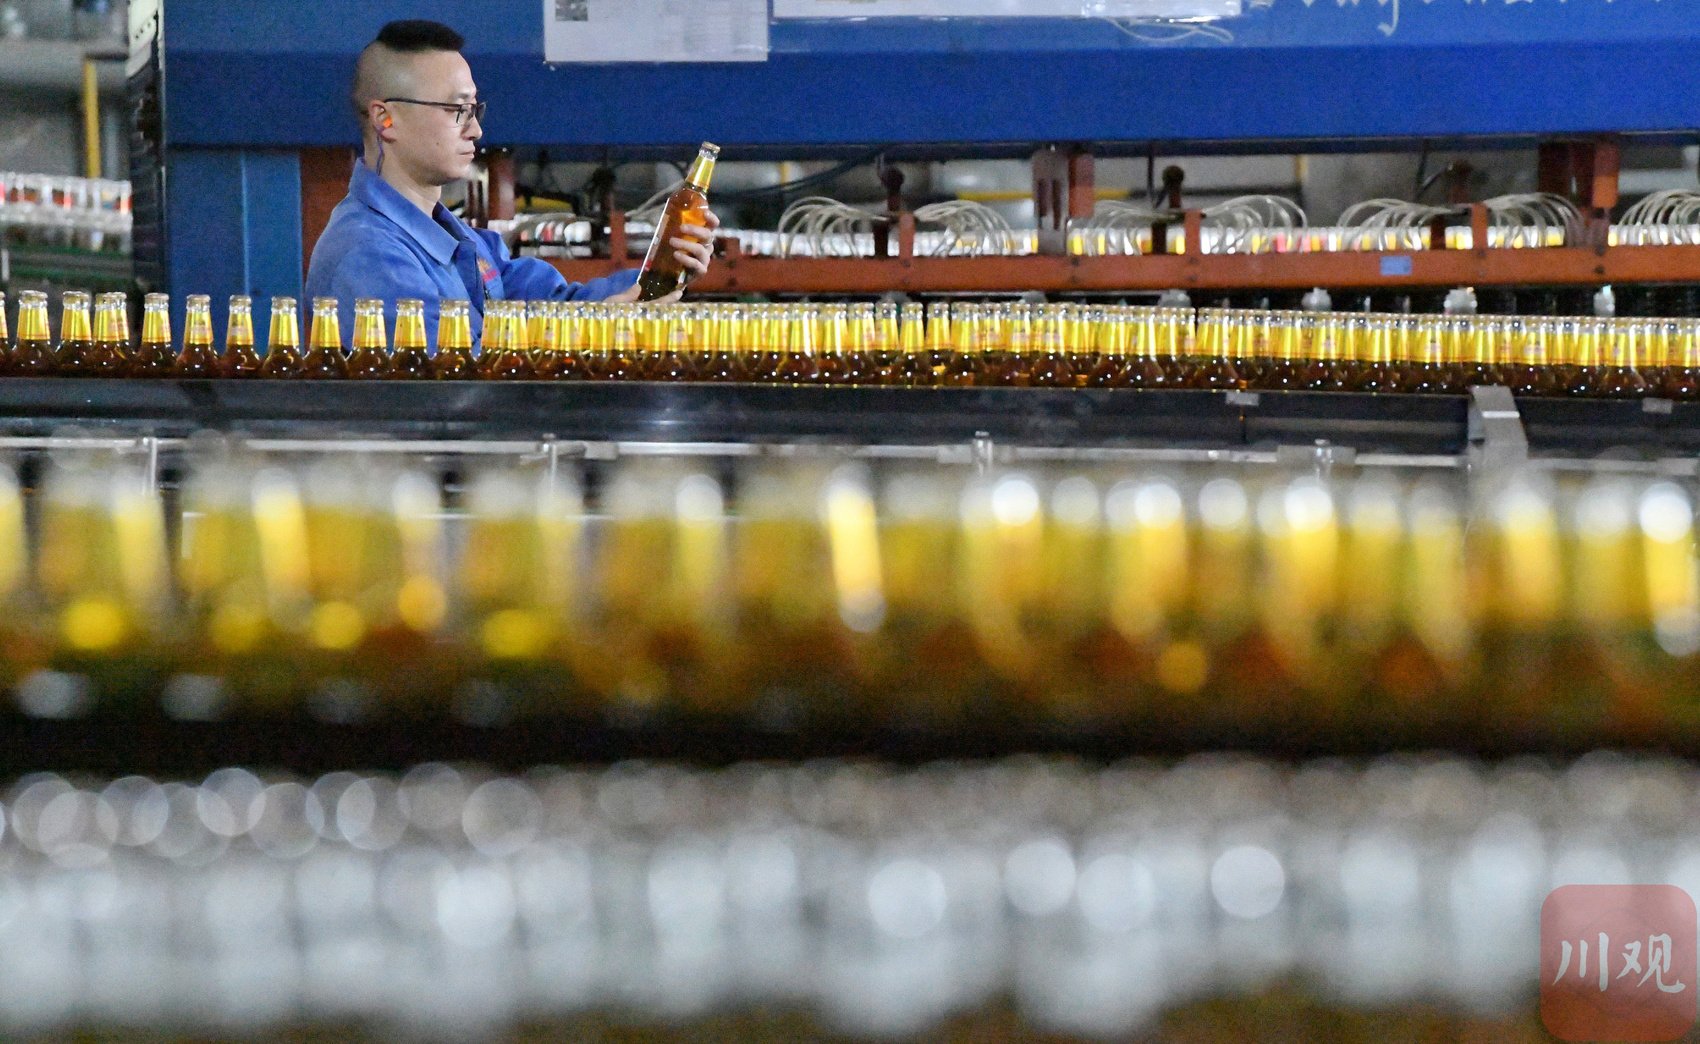 工作人员正在赶制啤酒订单。